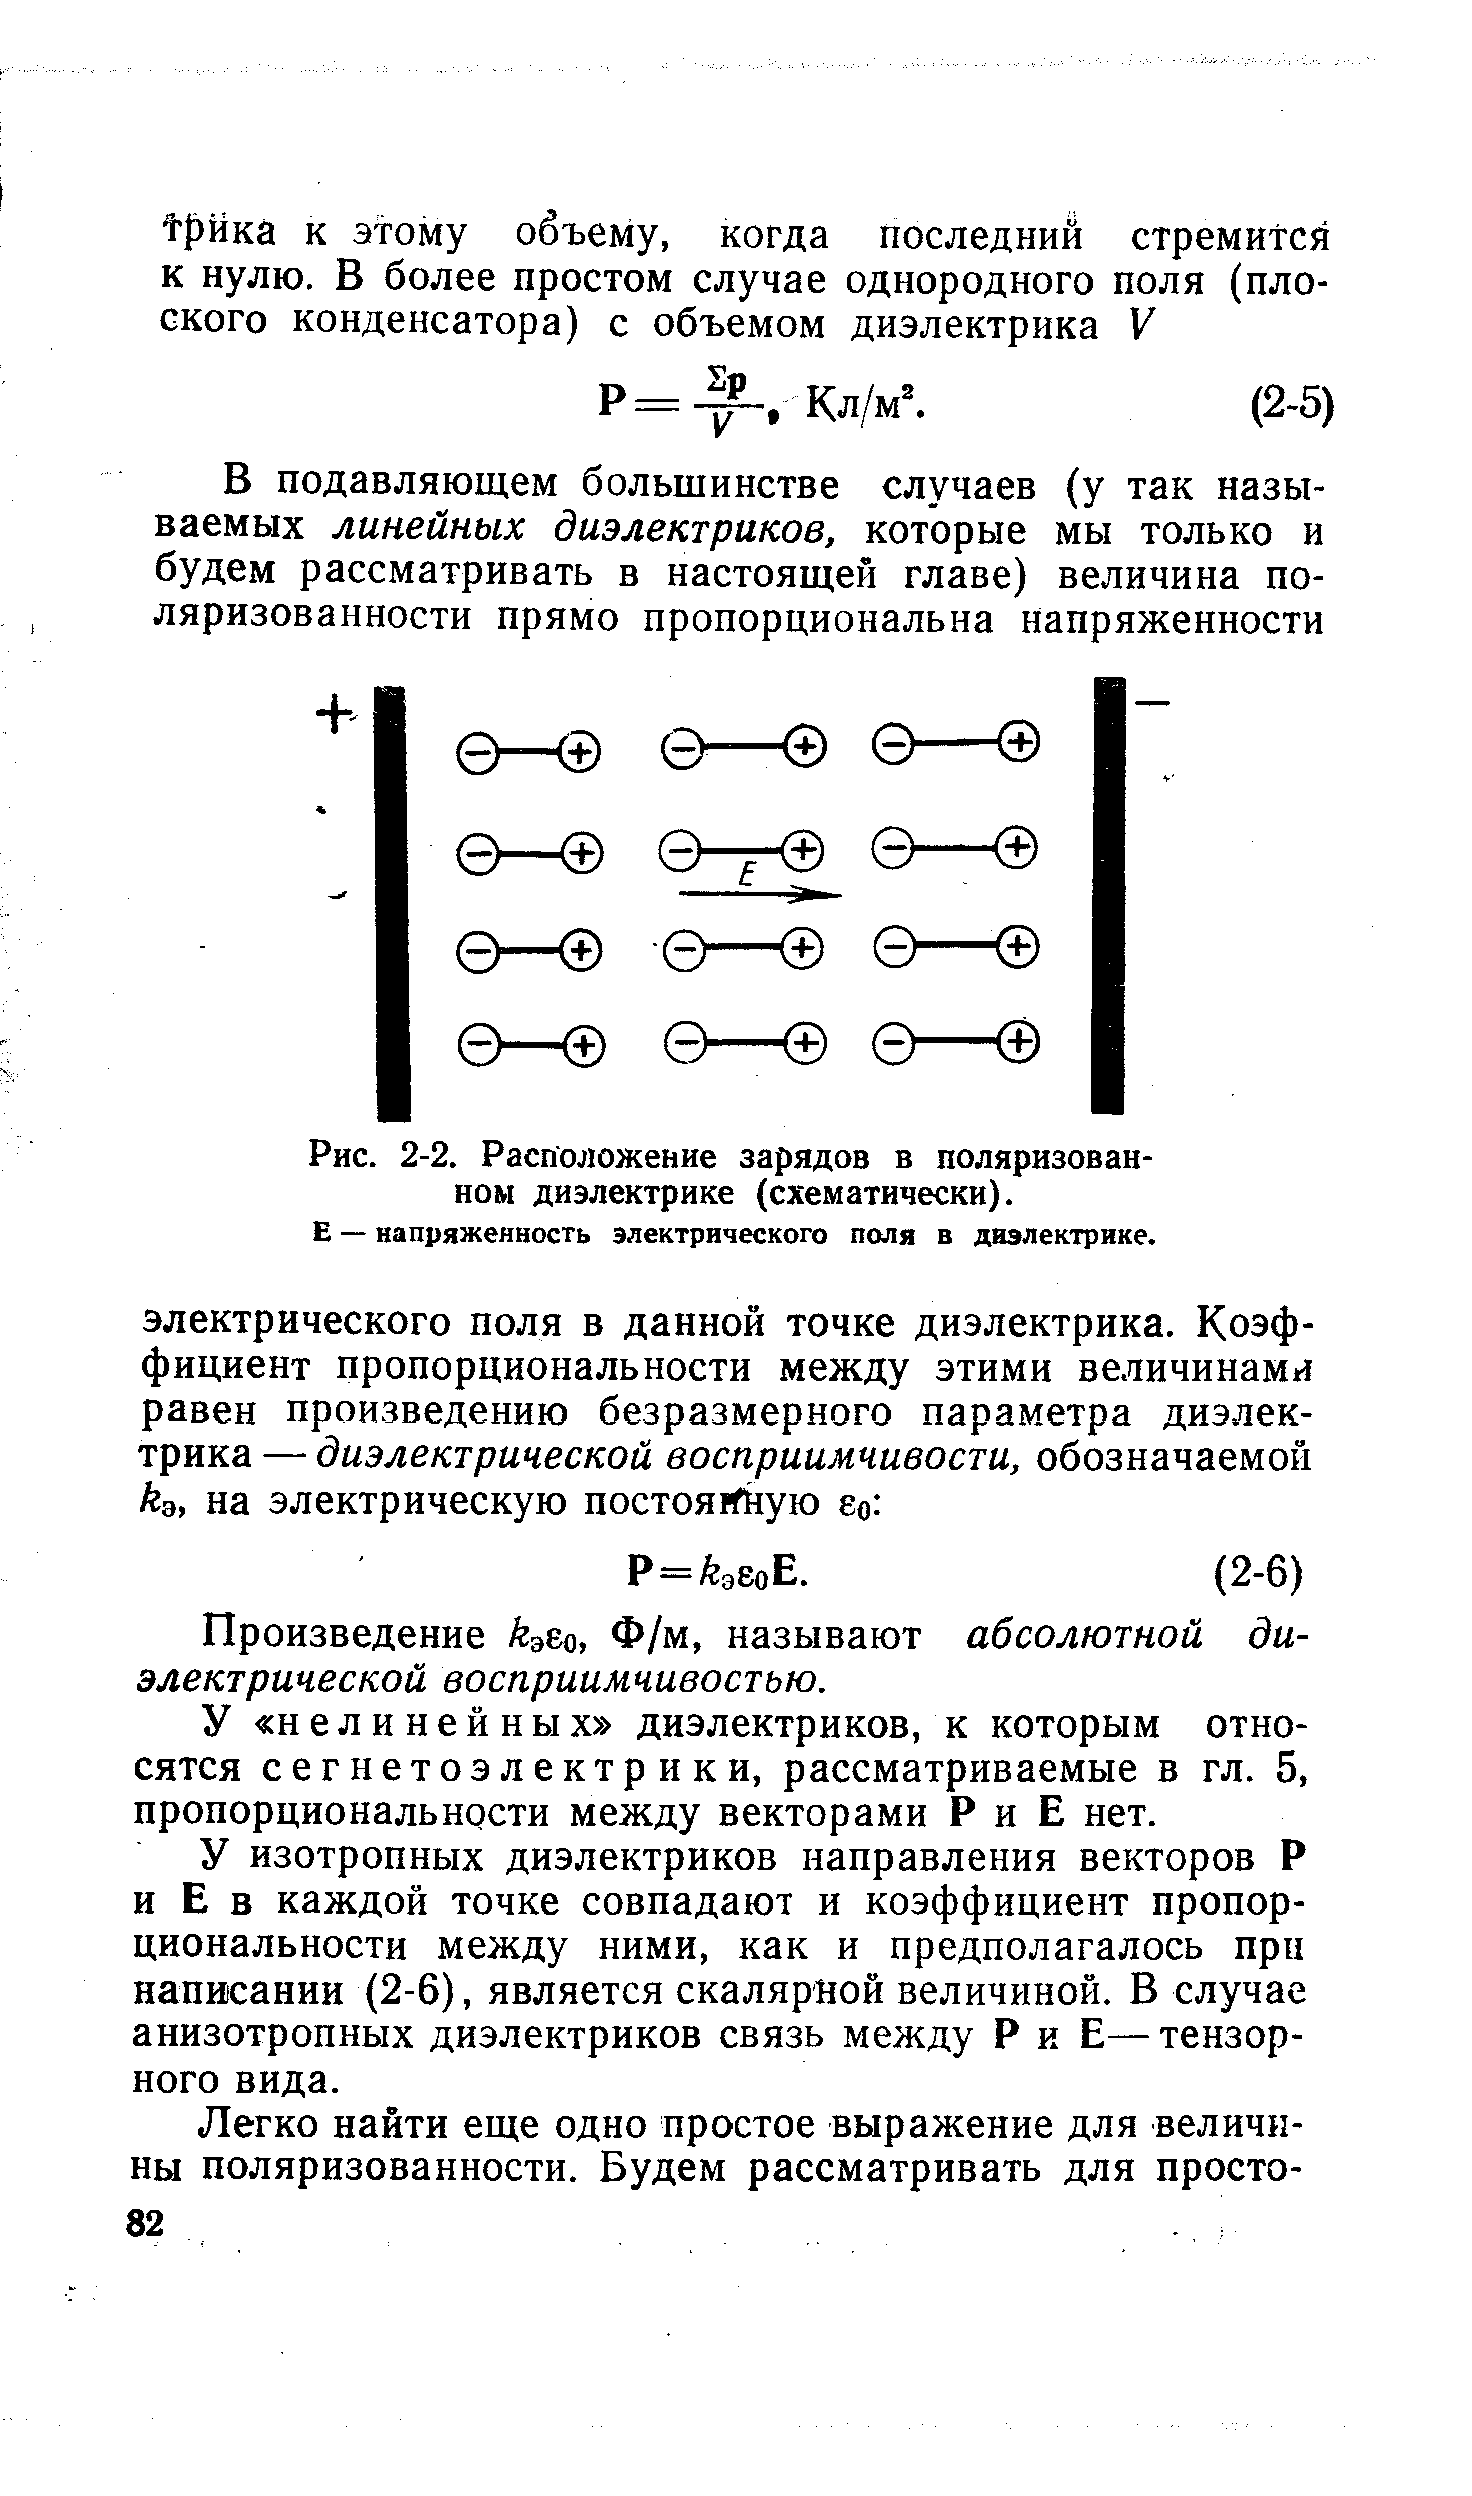 Рис. 2-2. Расположение зарядов в поляризованном диэлектрике (схематически).
